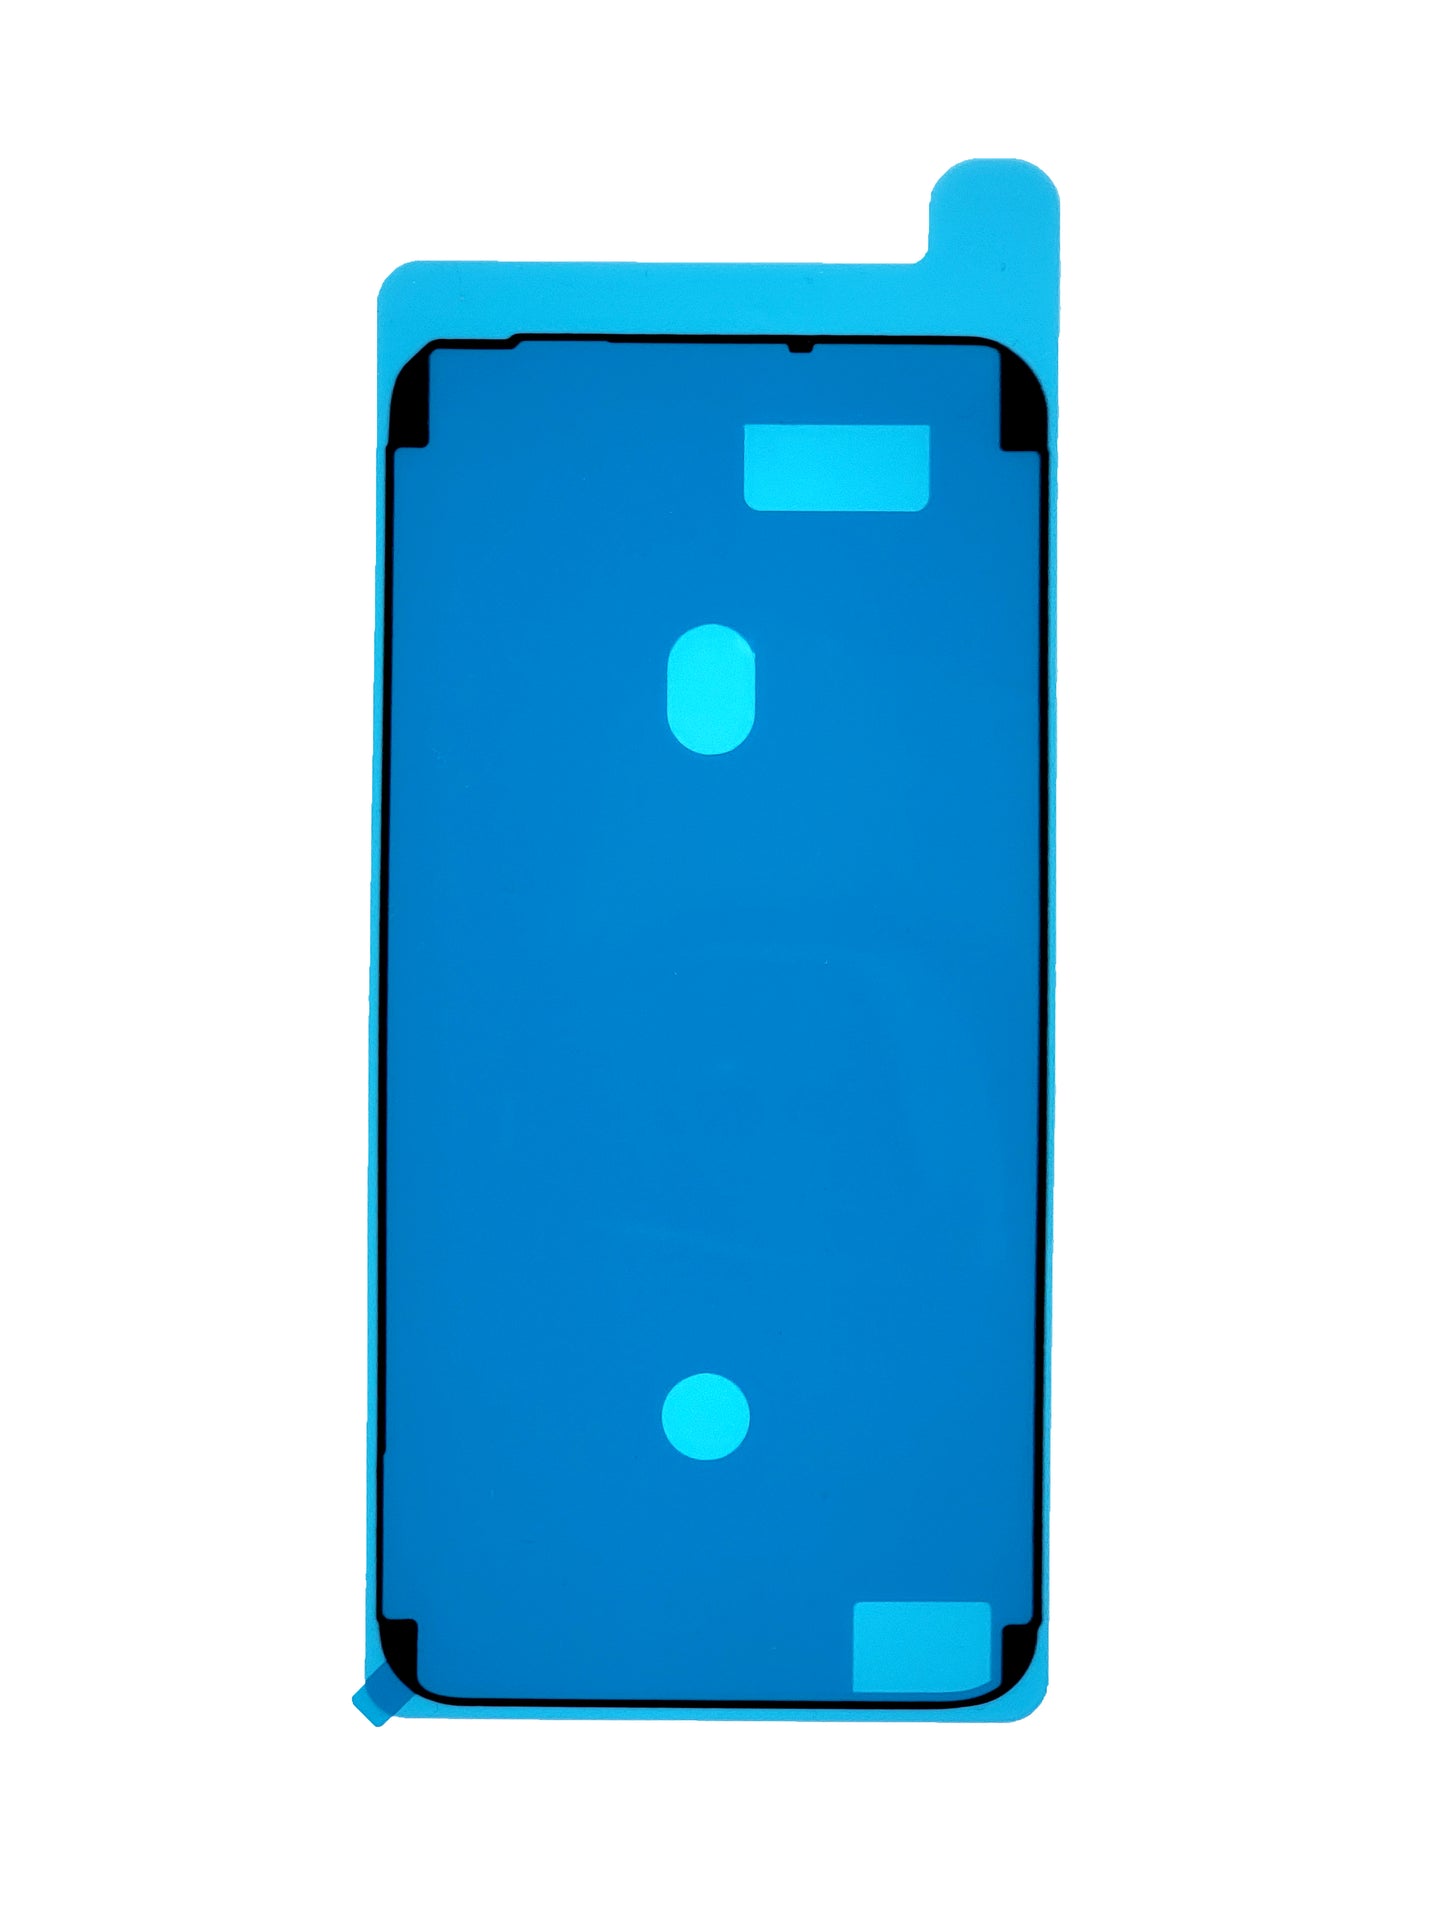 iPhone 6S Plus Waterproof LCD Adhesive Seal (Black)